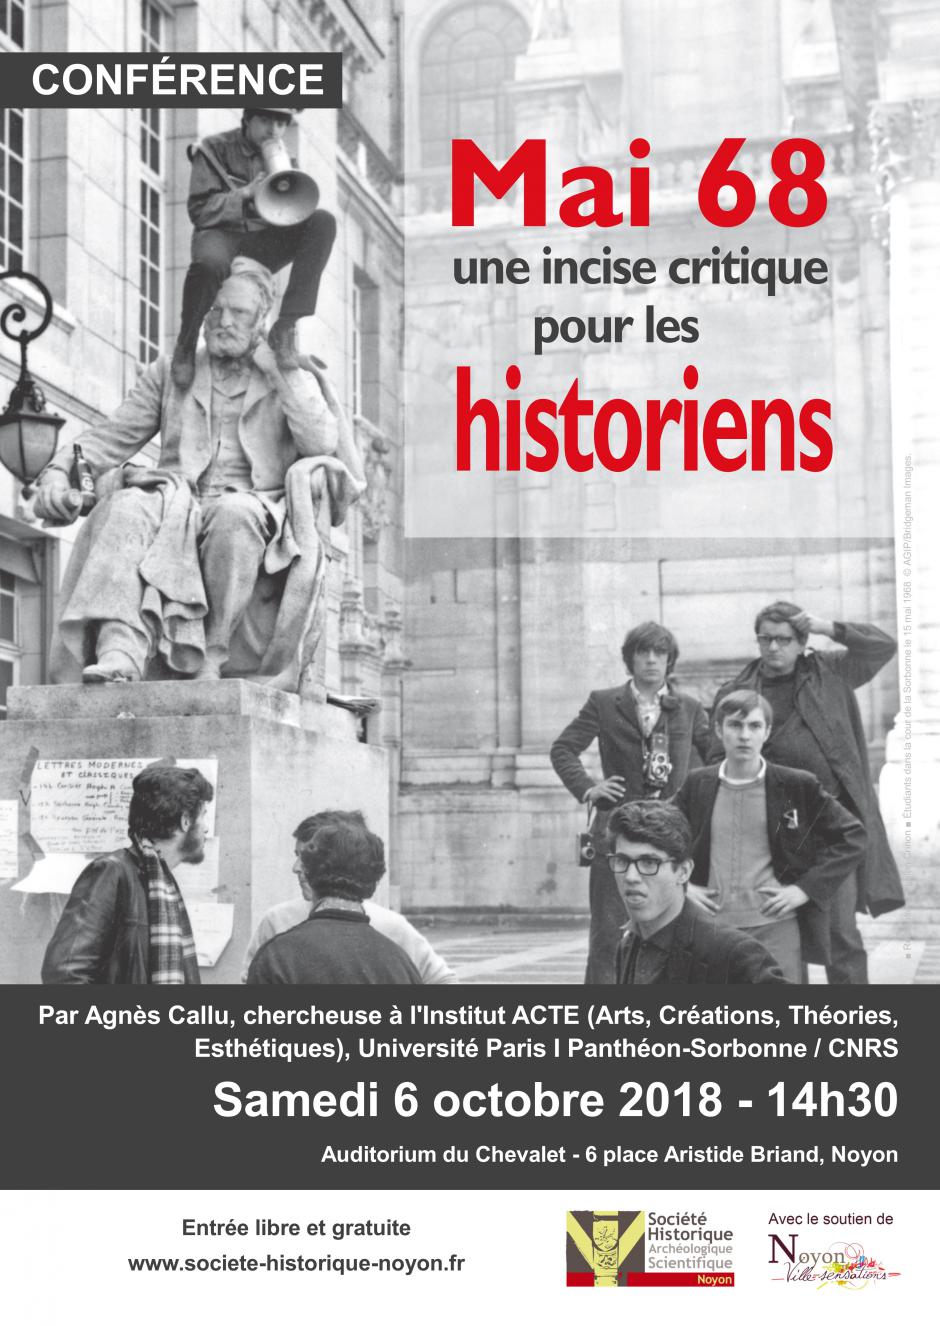 6 octobre, Noyon - Société historique-Conférence « Mai 68 une incise critique pour les historiens »